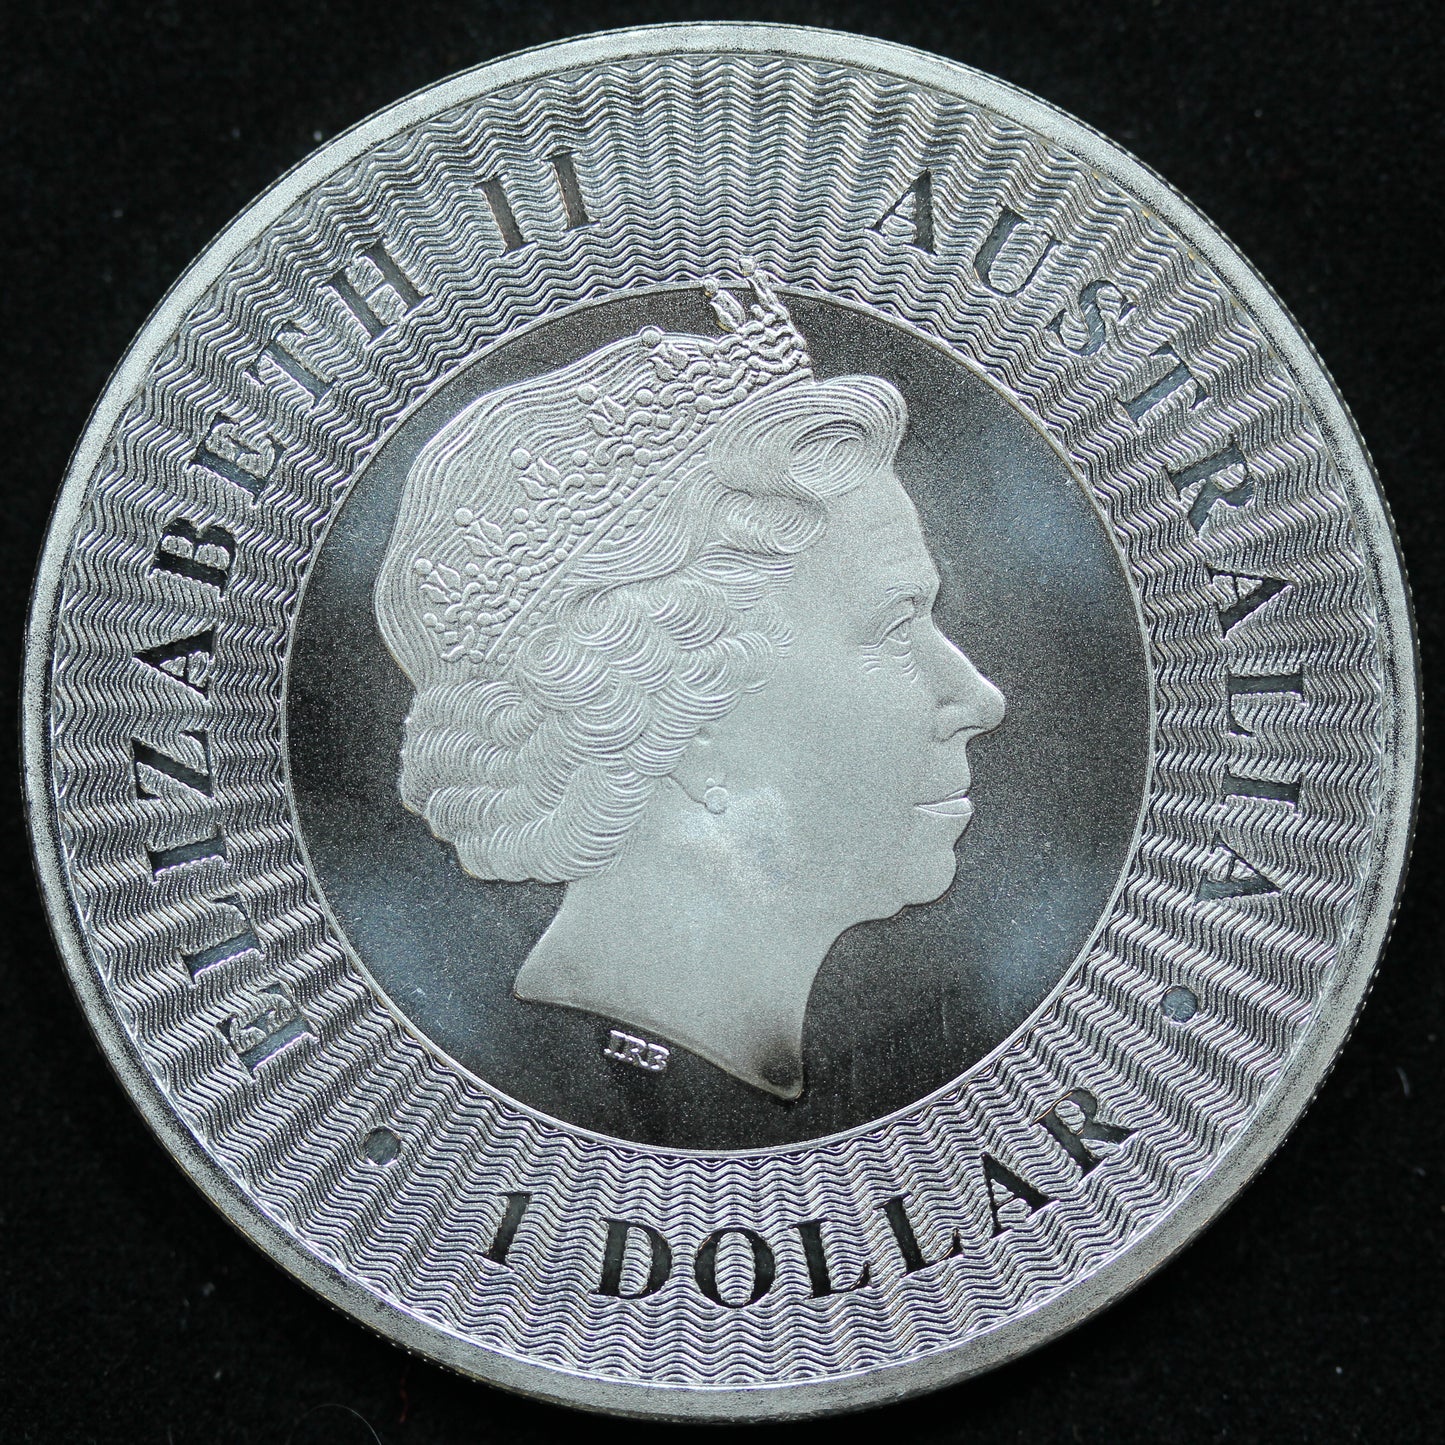 2016 1 oz Silver .9999 Fine Silver Australian Kangaroo $1 Coin BU